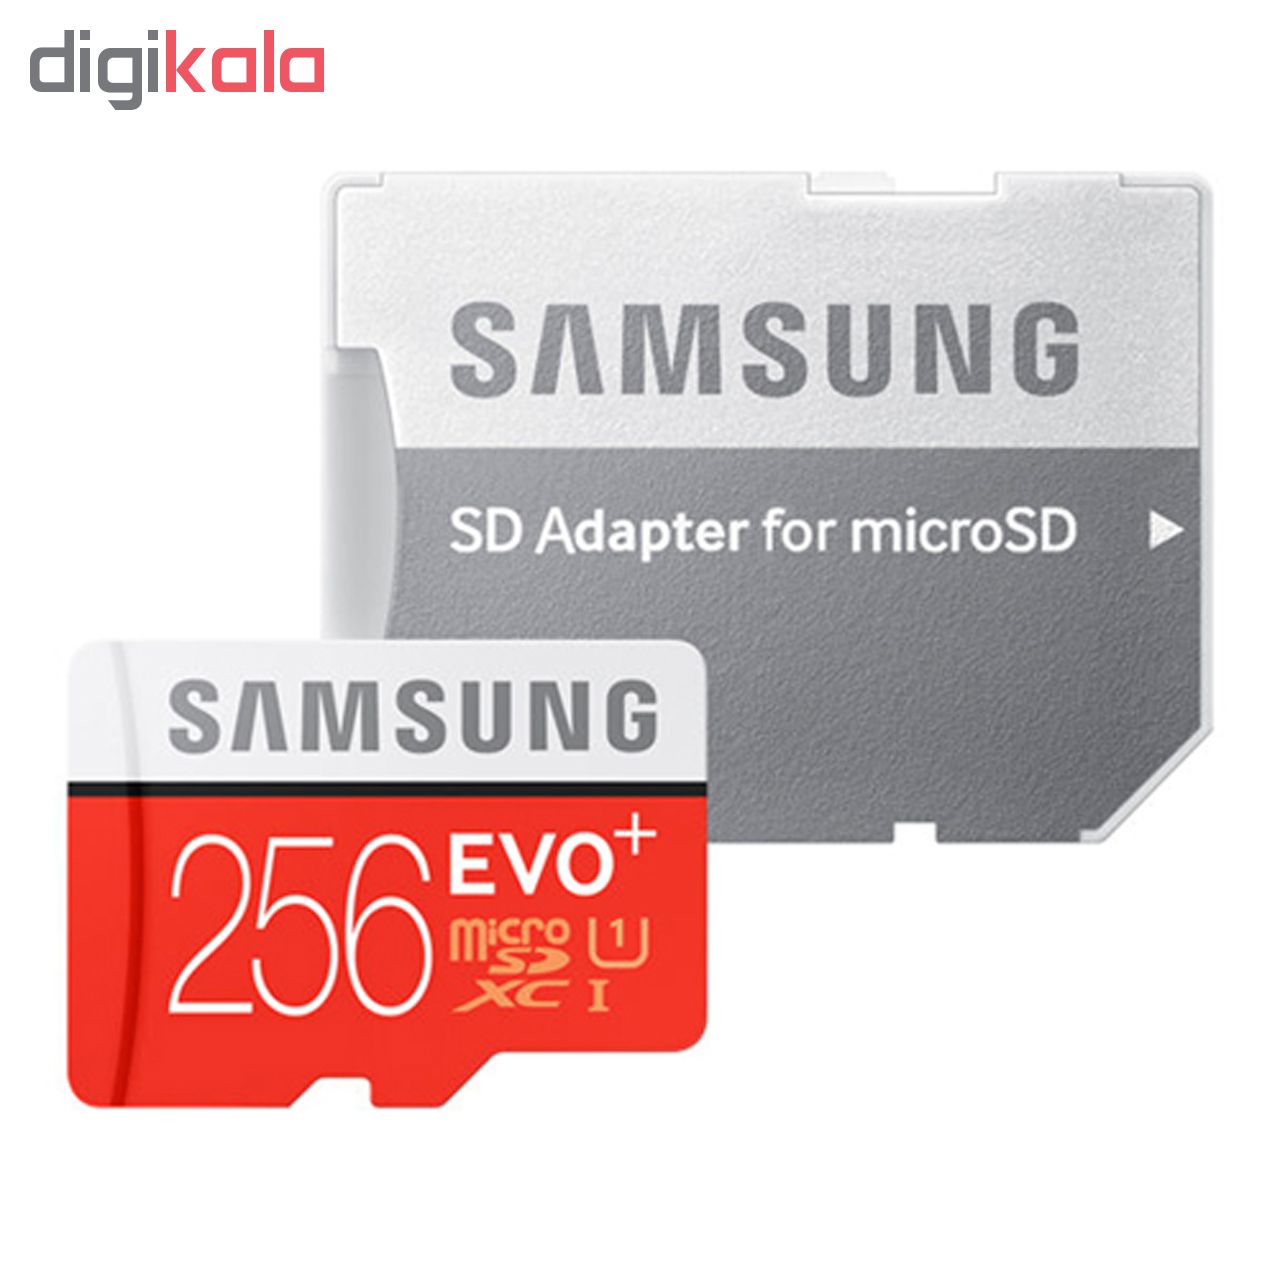 کارت حافظه microSDXC مدل Evo Plus کلاس 10 استاندارد UHS-I U1 سرعت 80MBps ظرفیت 256 گیگابایت به همراه آداپتور SD